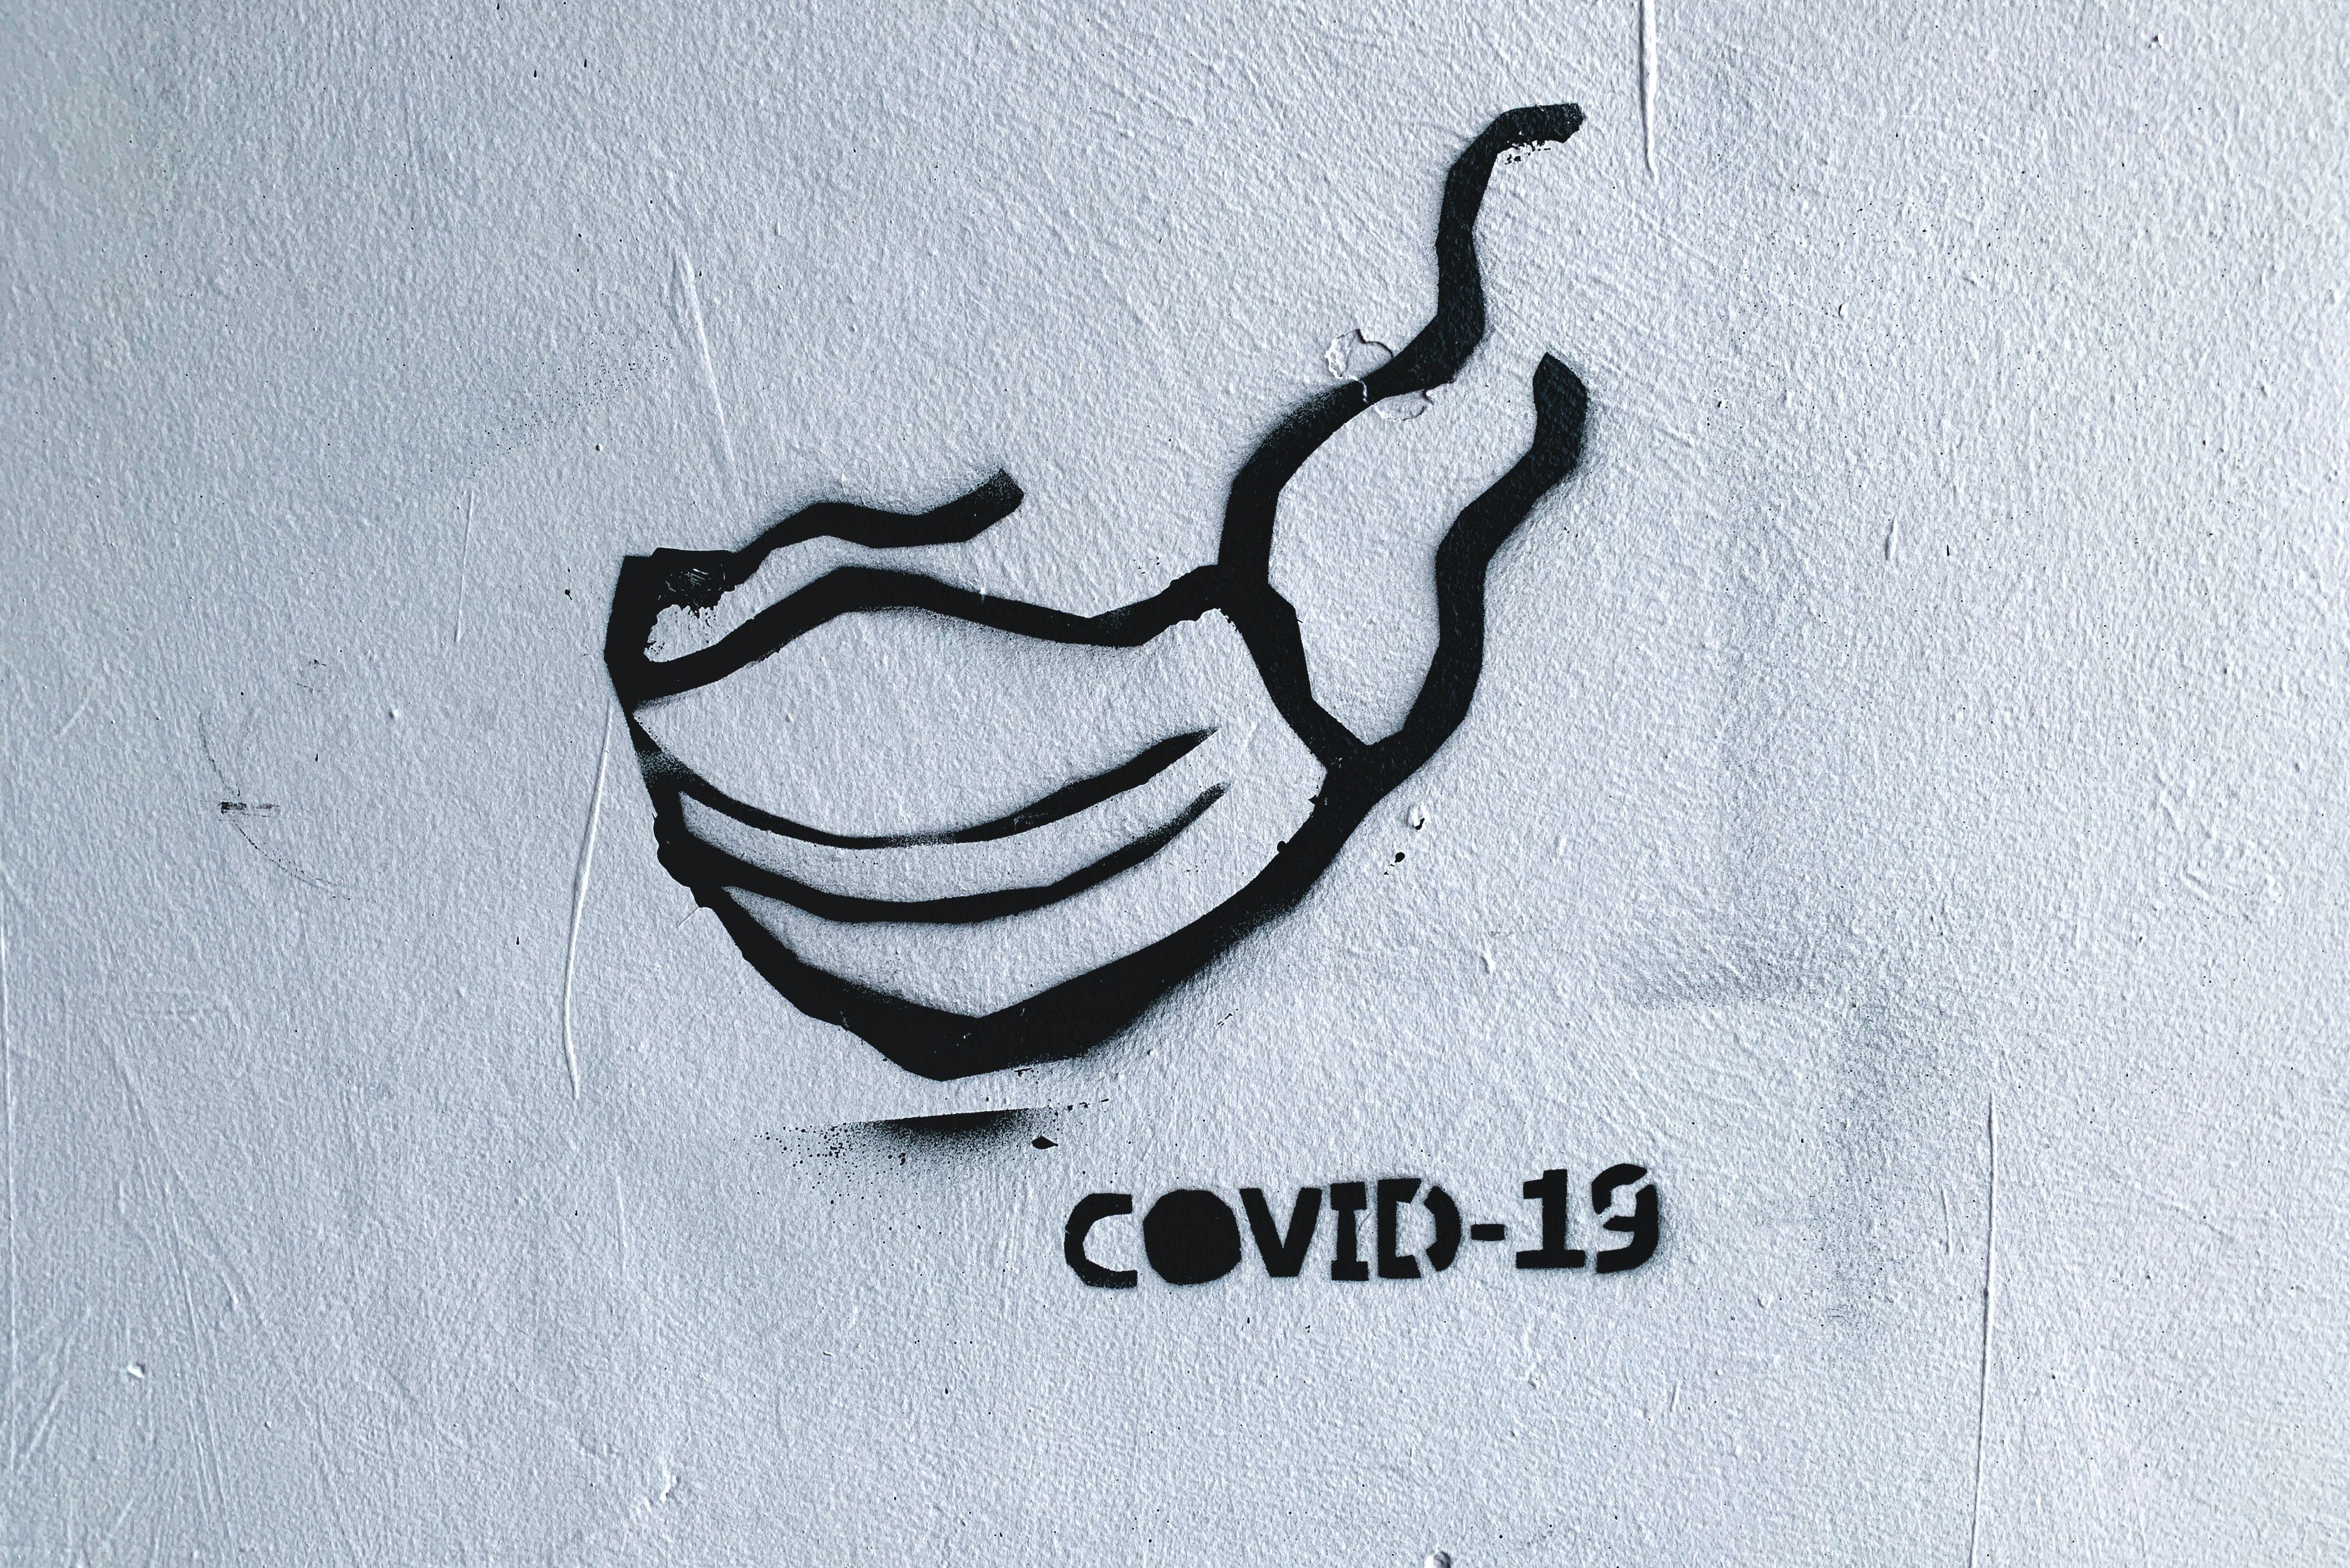 COVID-19 street art